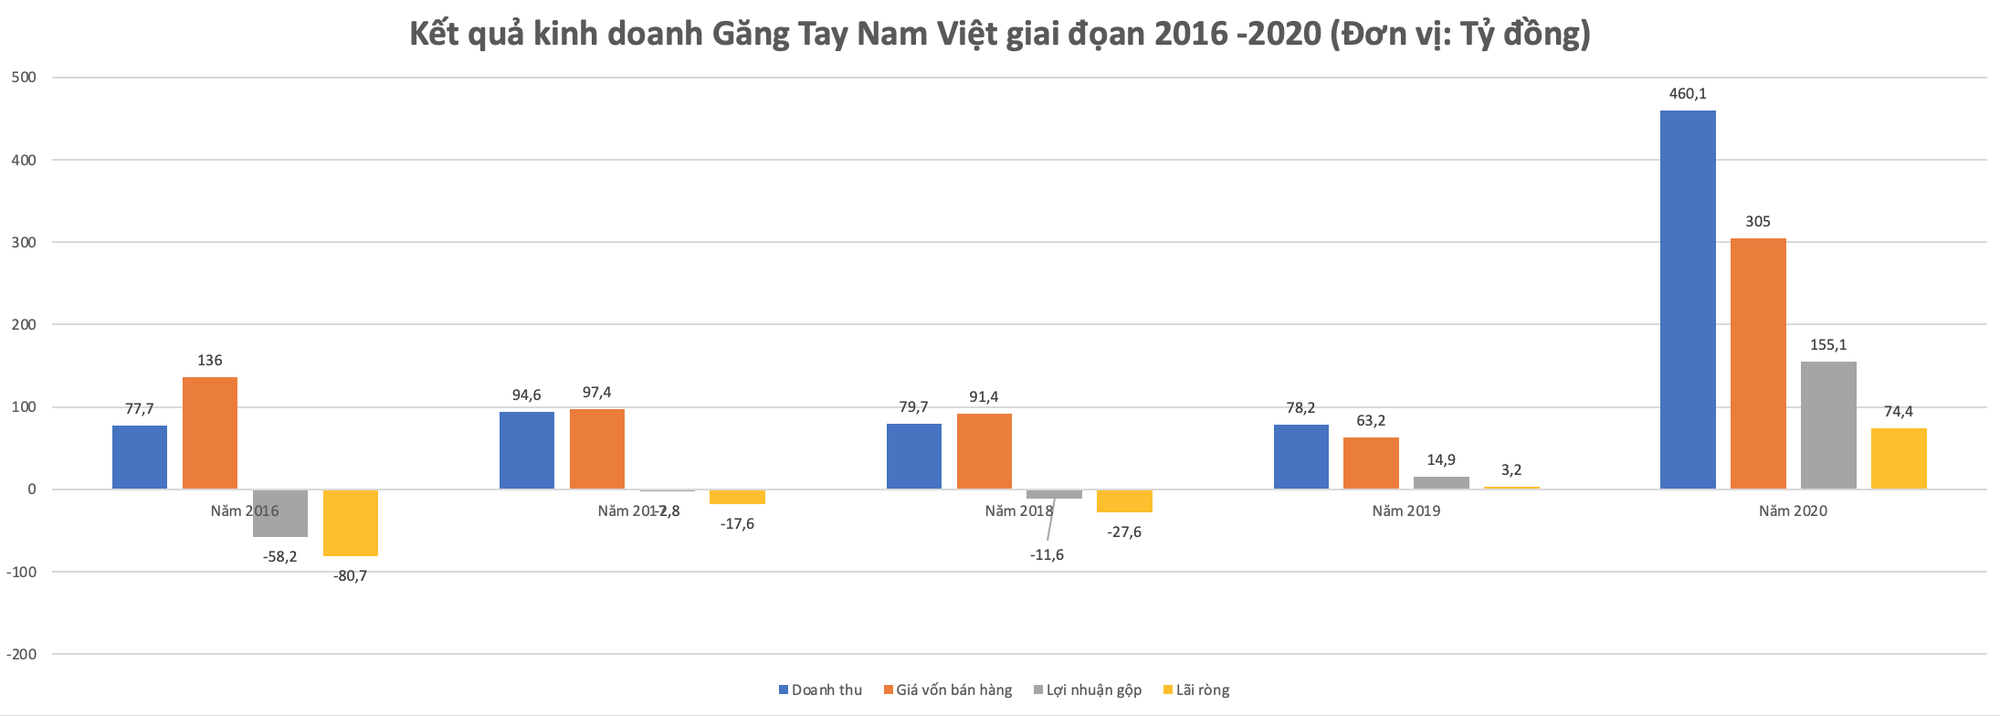 Găng tay Nam Việt: Lỗ luỹ kế 5 năm gần nhất hơn 48 tỷ đồng, ngân hàng siết khoản nợ hơn 1.000 tỷ đồng - Ảnh 2.